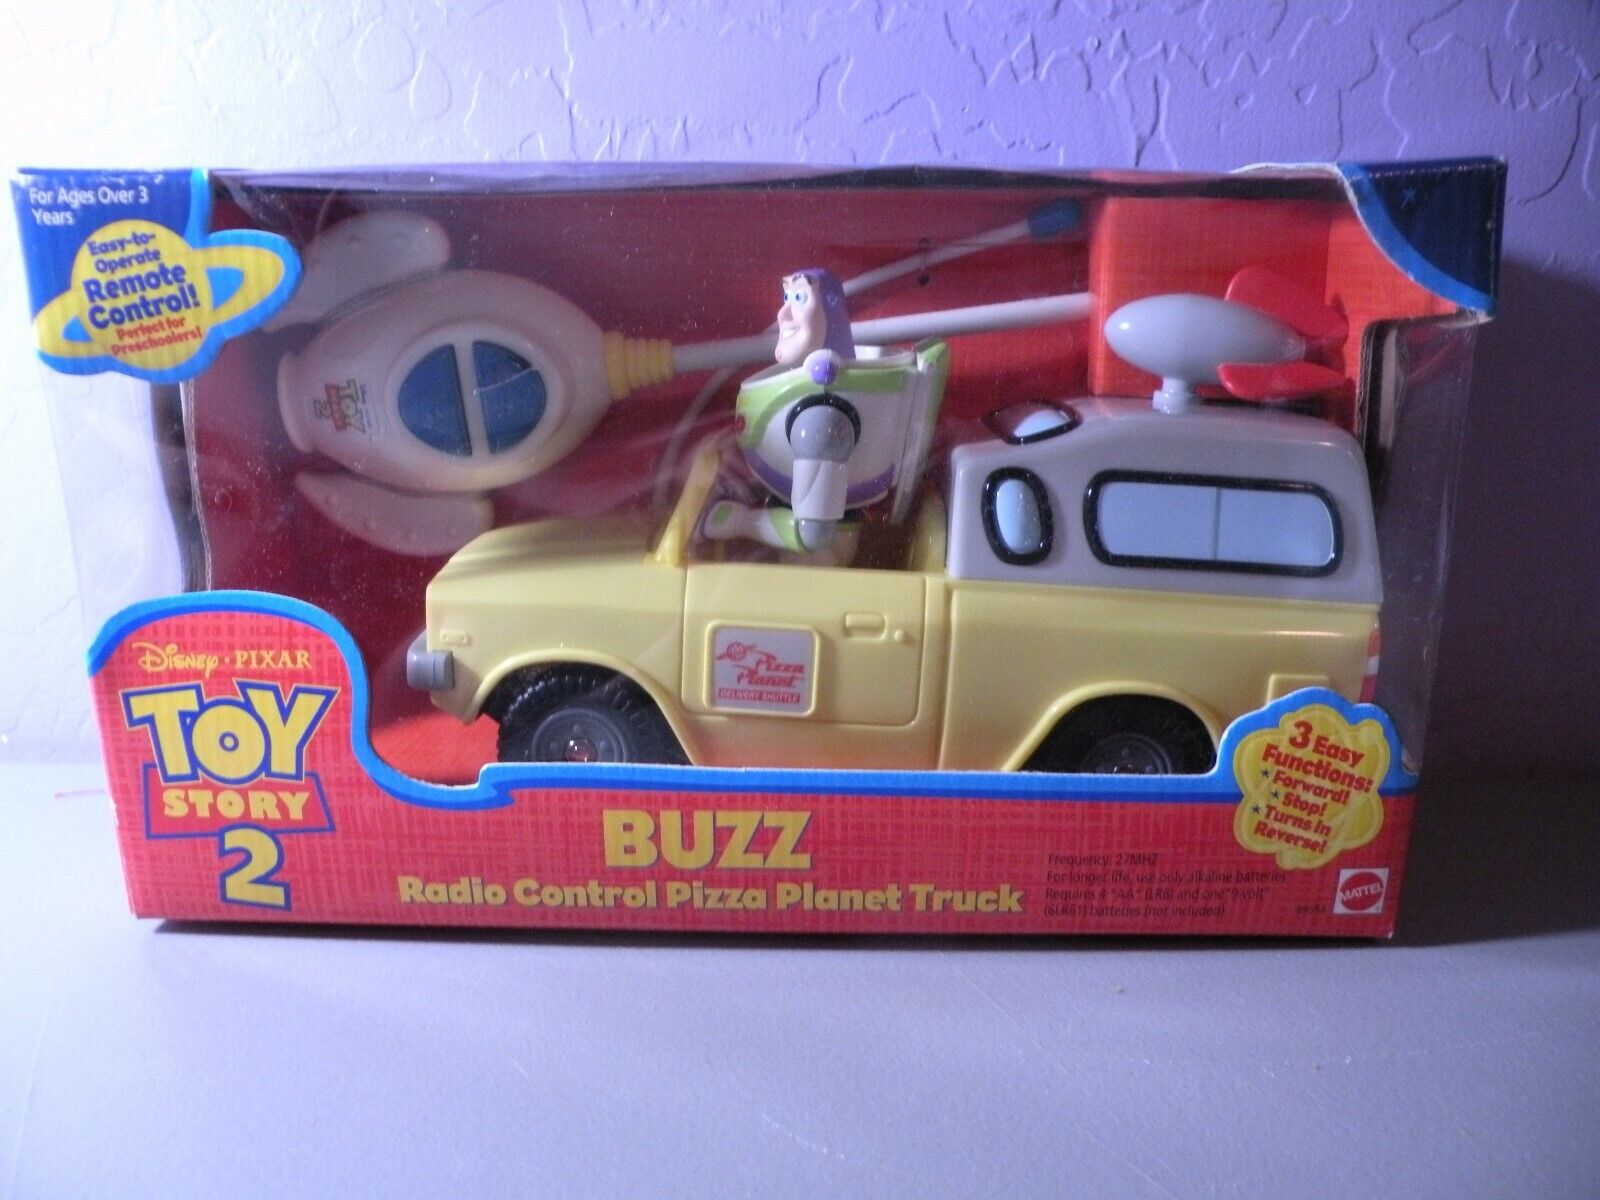 Toy Story 2 Buzz Lightyear RADIO CONTROL Pizza Planet Truck RC Car Sealed NIB 